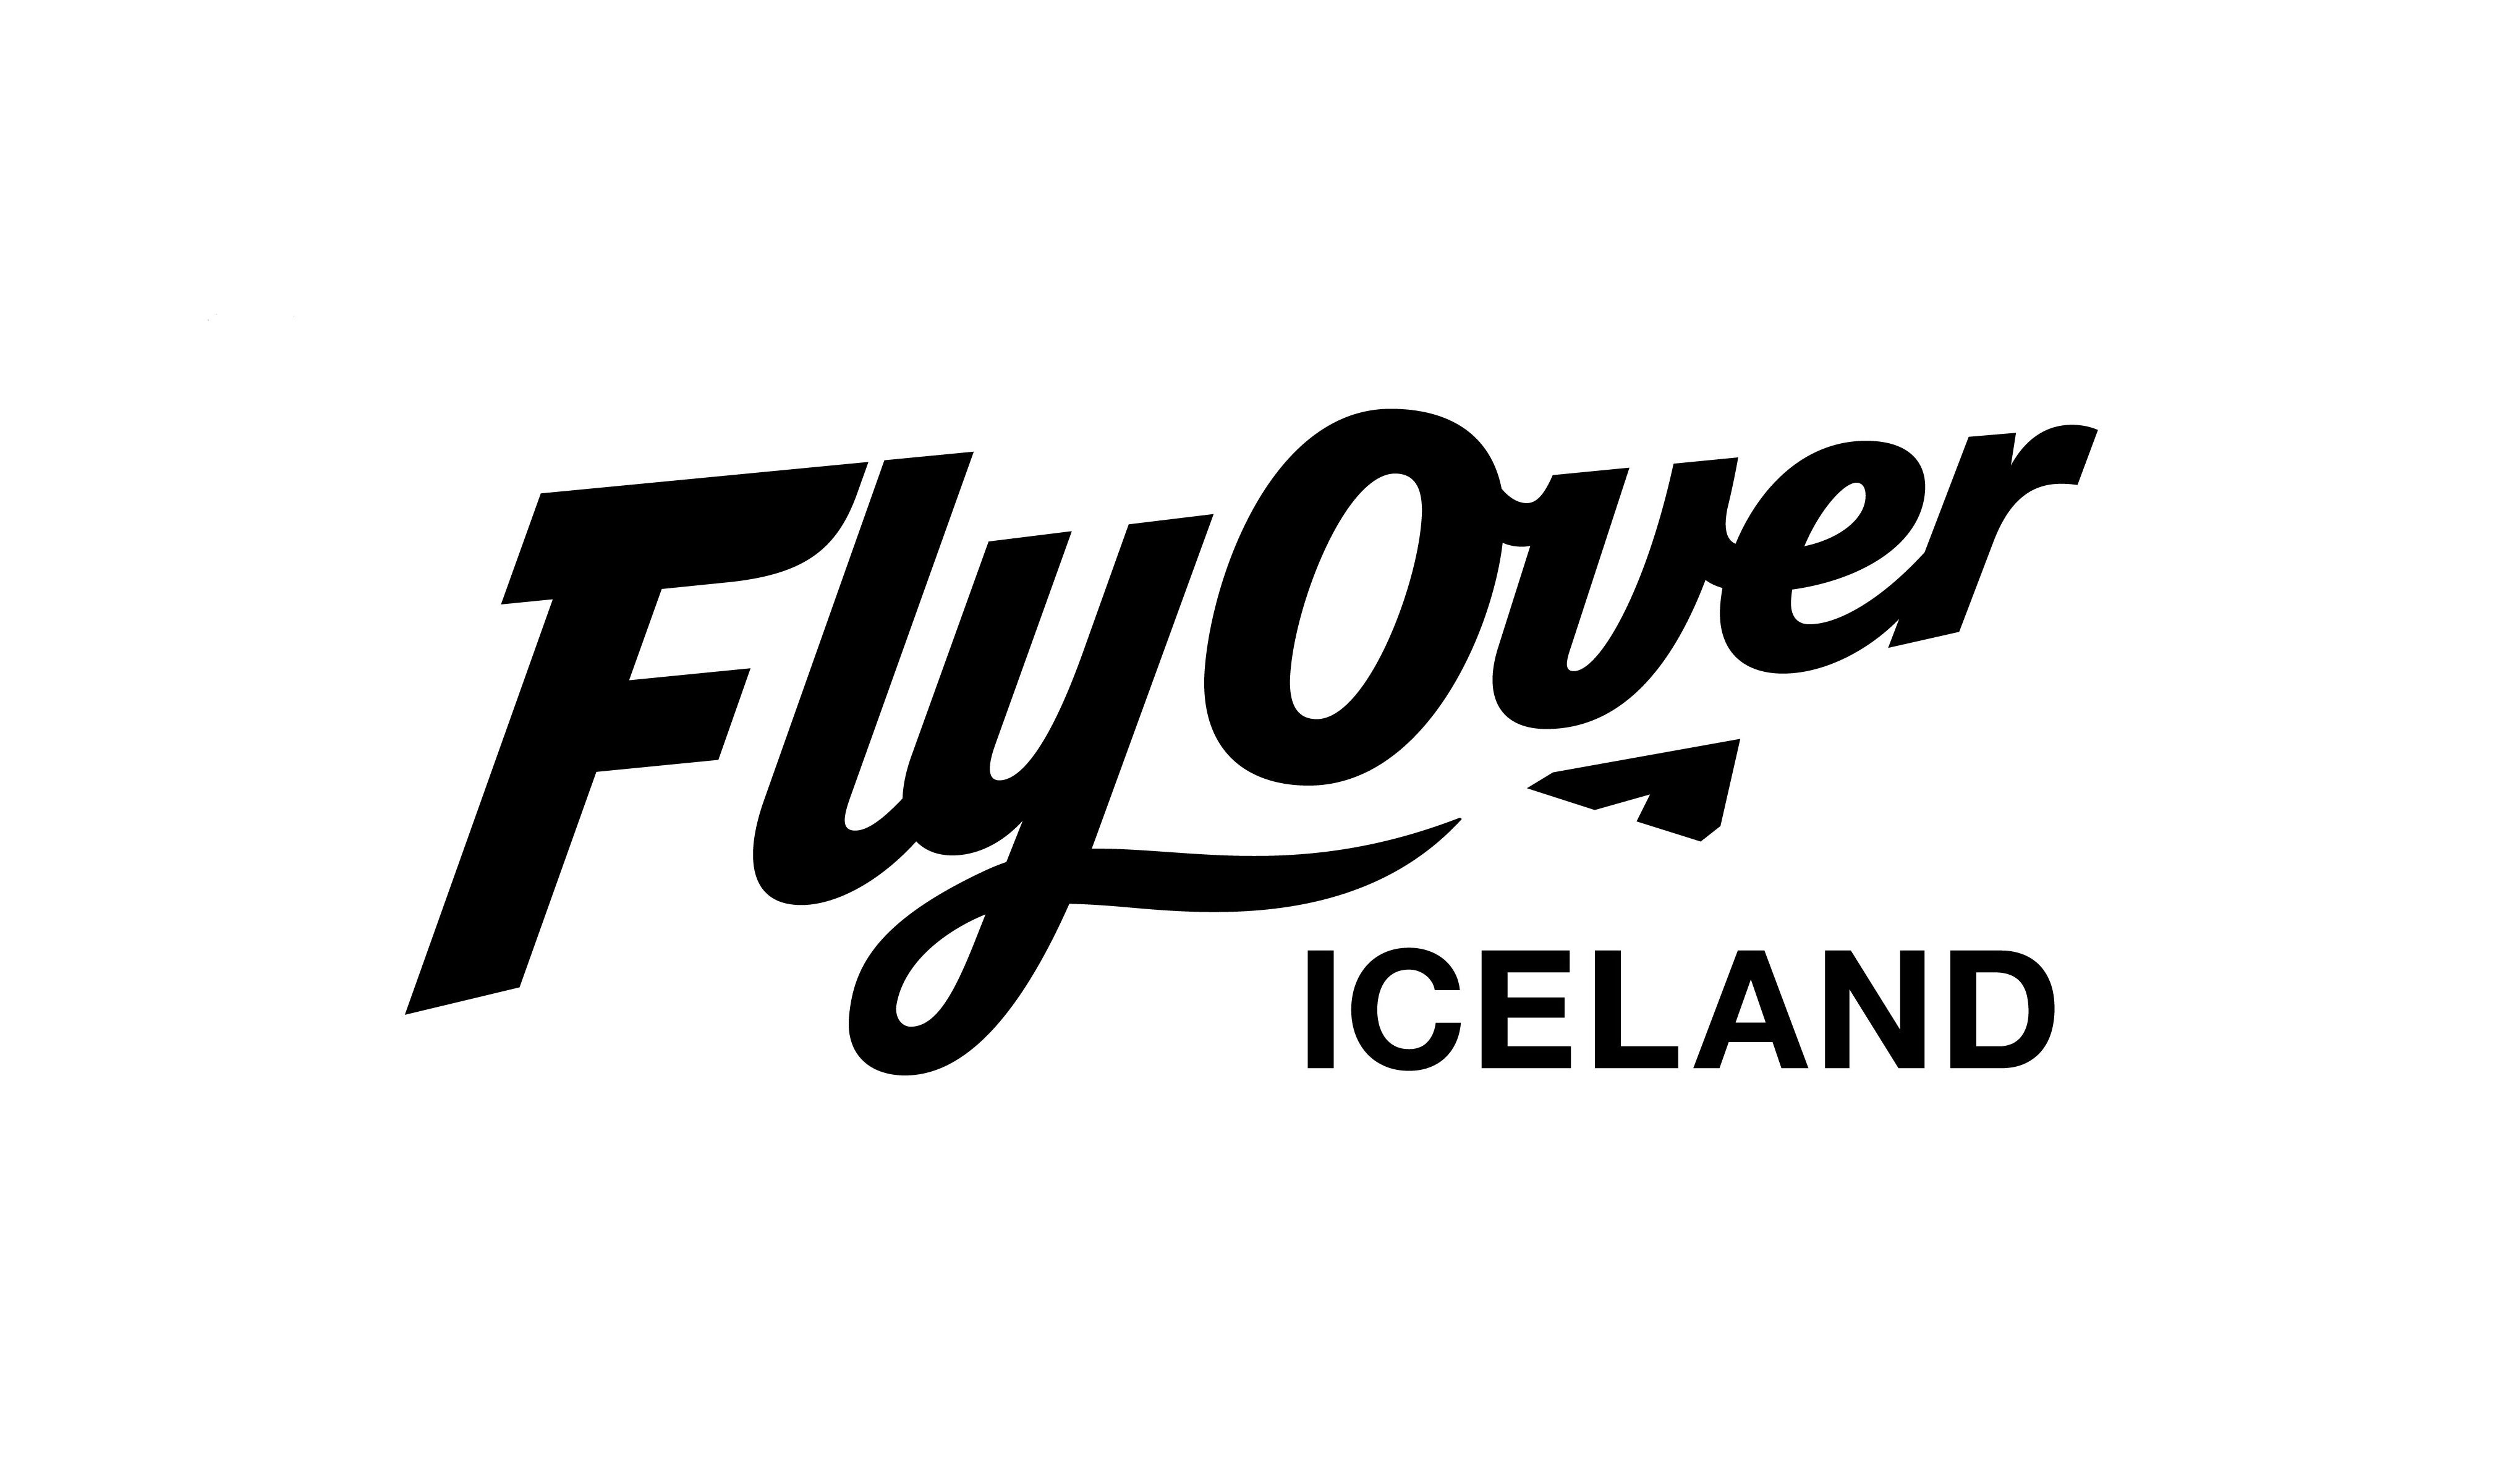  FLYOVER ICELAND